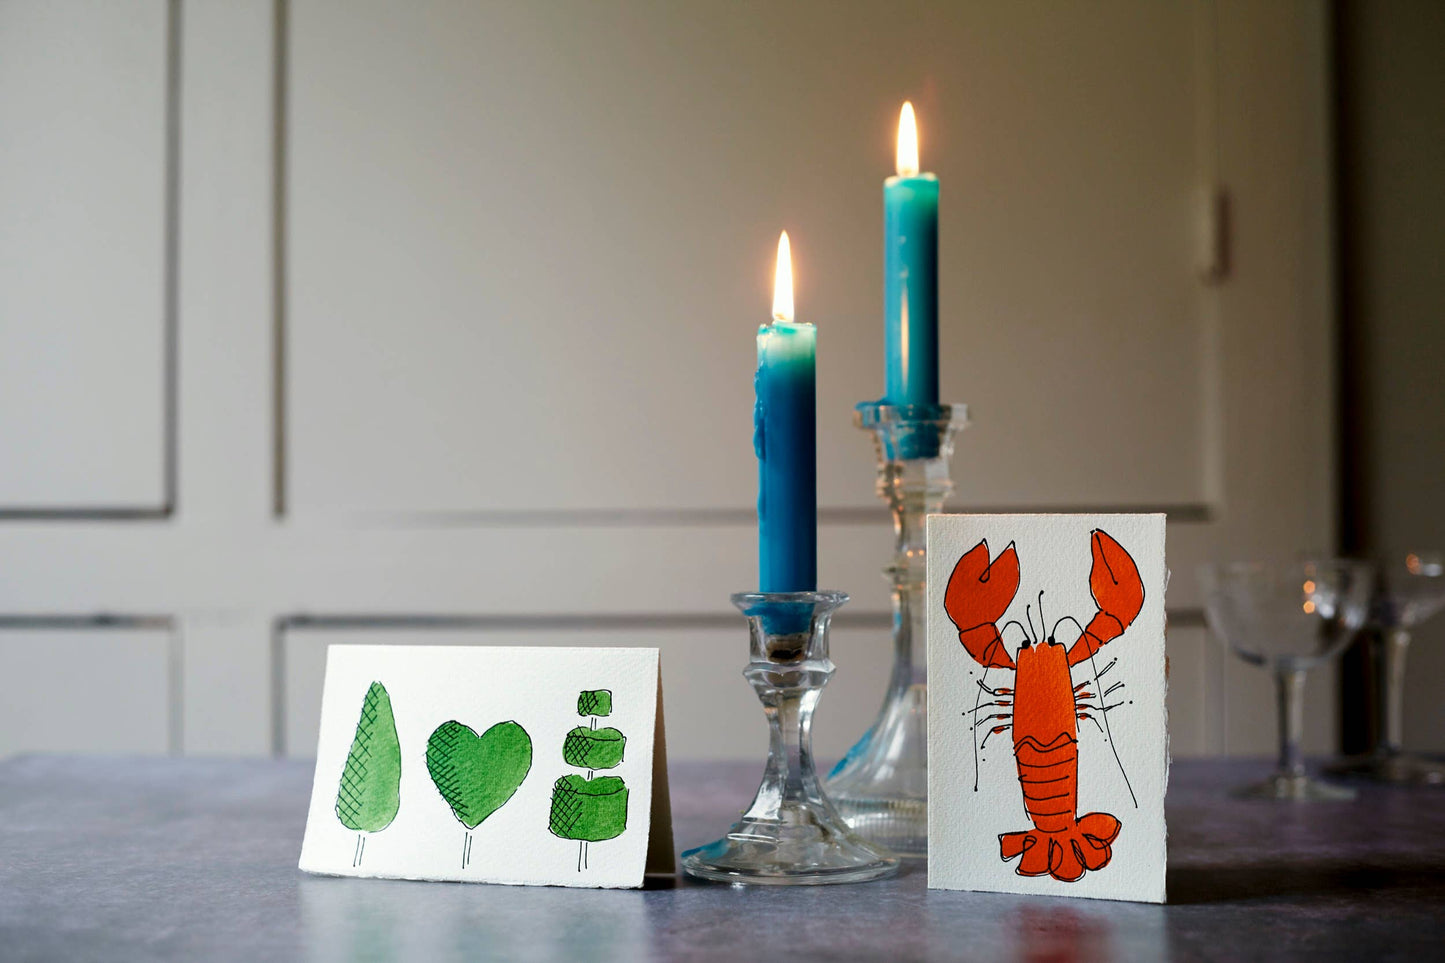 Scribble & Daub - Lobster Card